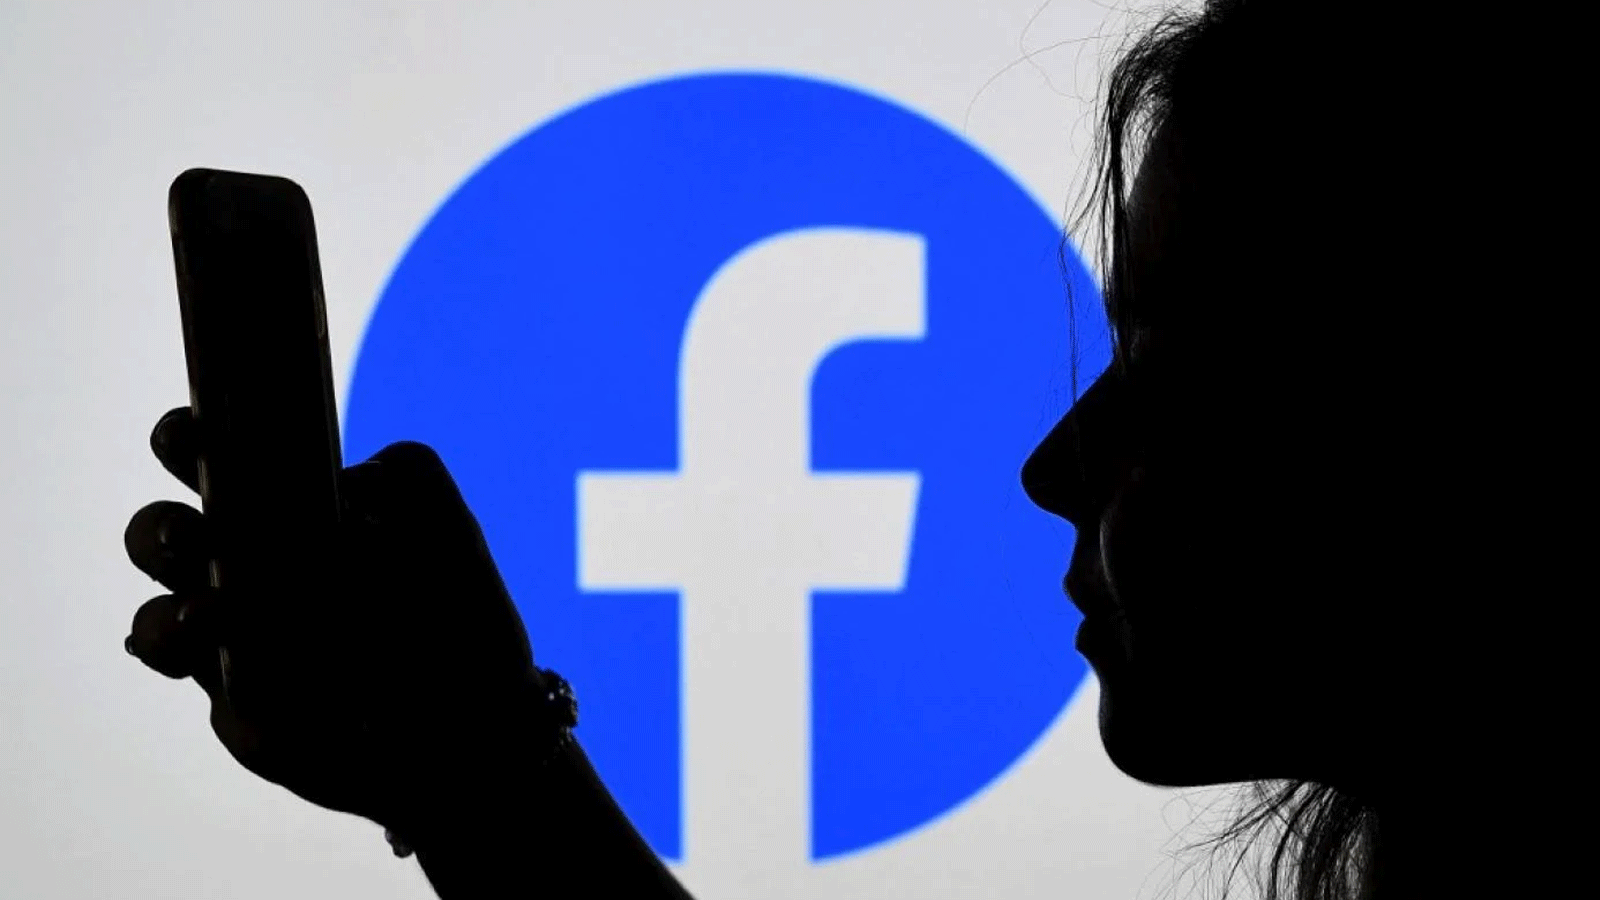 روسيا تحظر فيسبوك وإنستغرام بتهمة التطرف